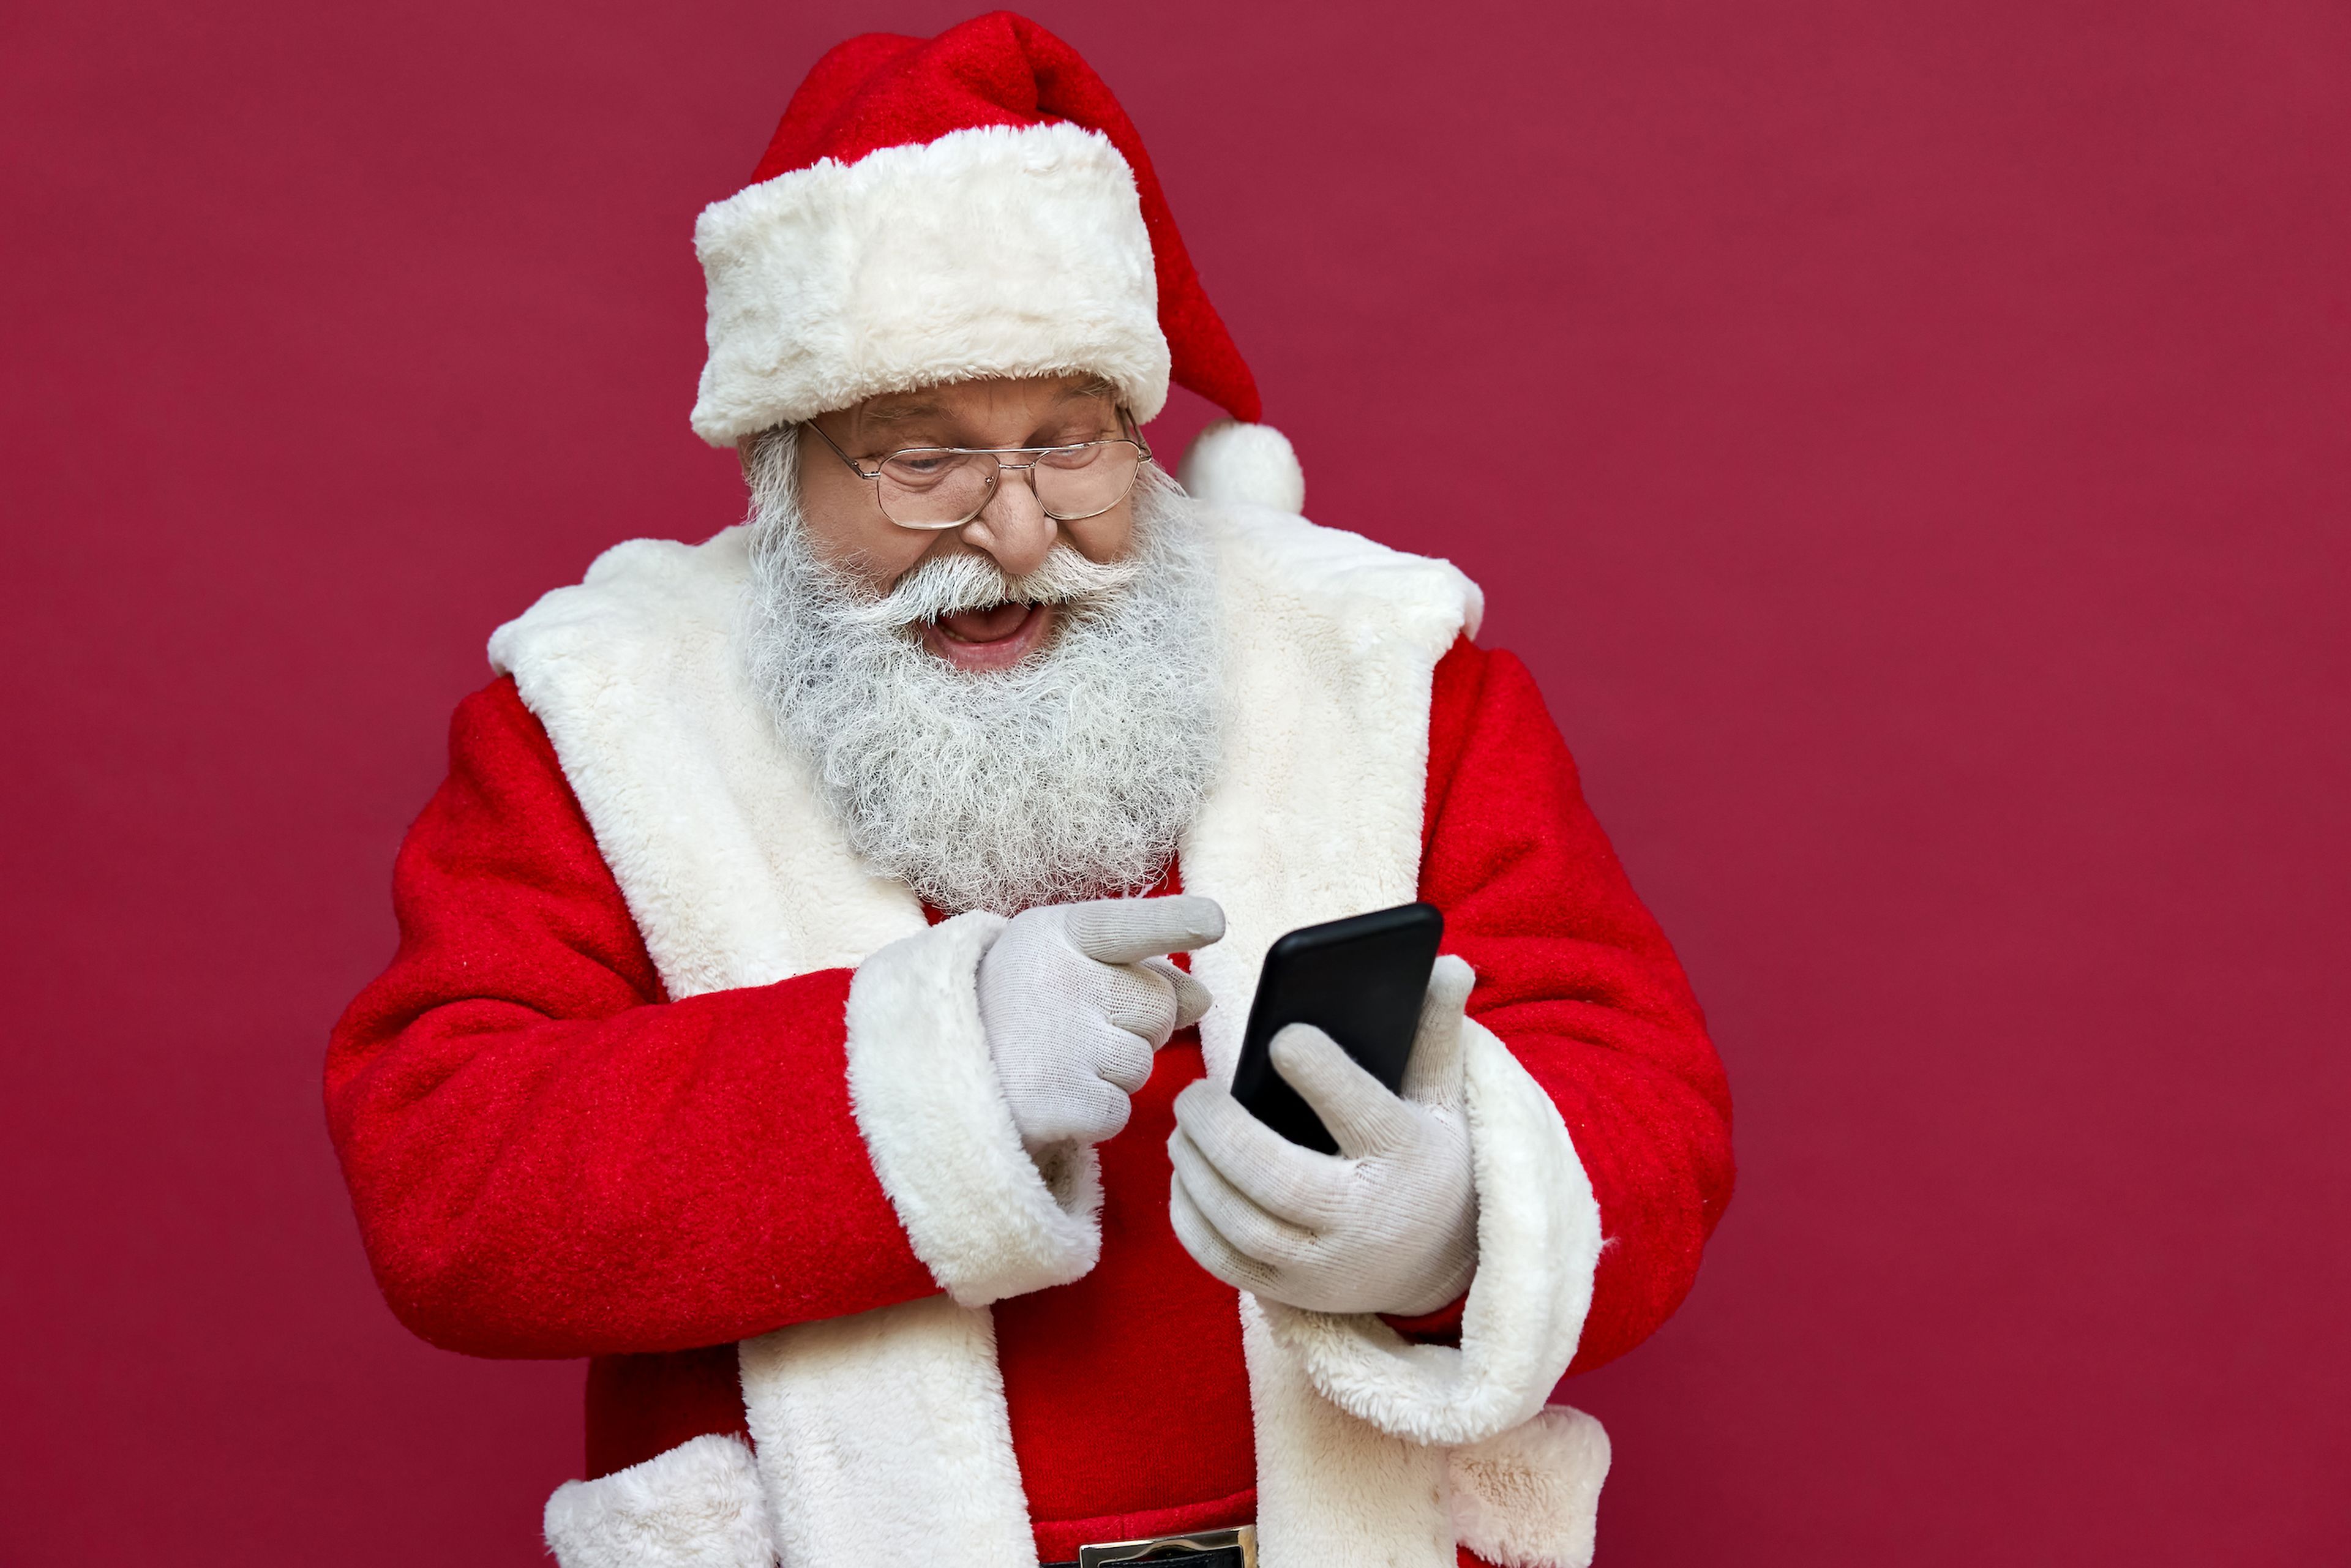 Imágenes graciosas y originales de Navidad para enviar por WhatsApp |  Business Insider España